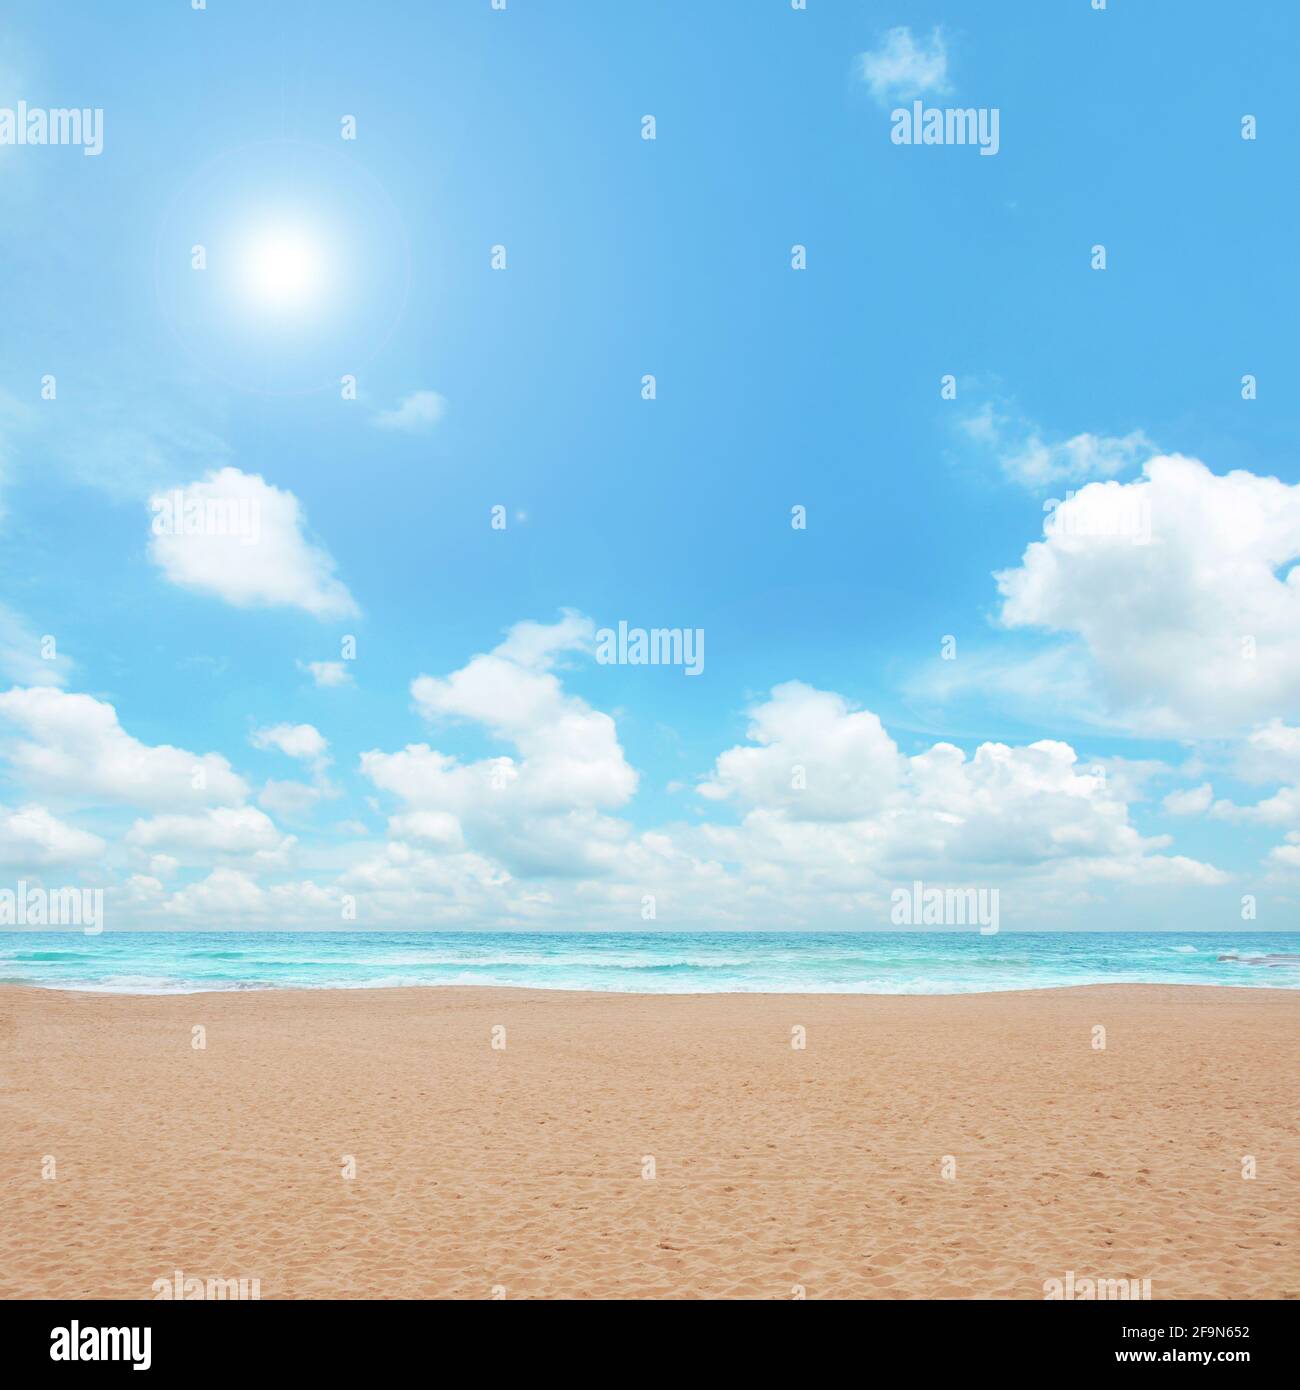 Sand beach and blue sky Stock Photo